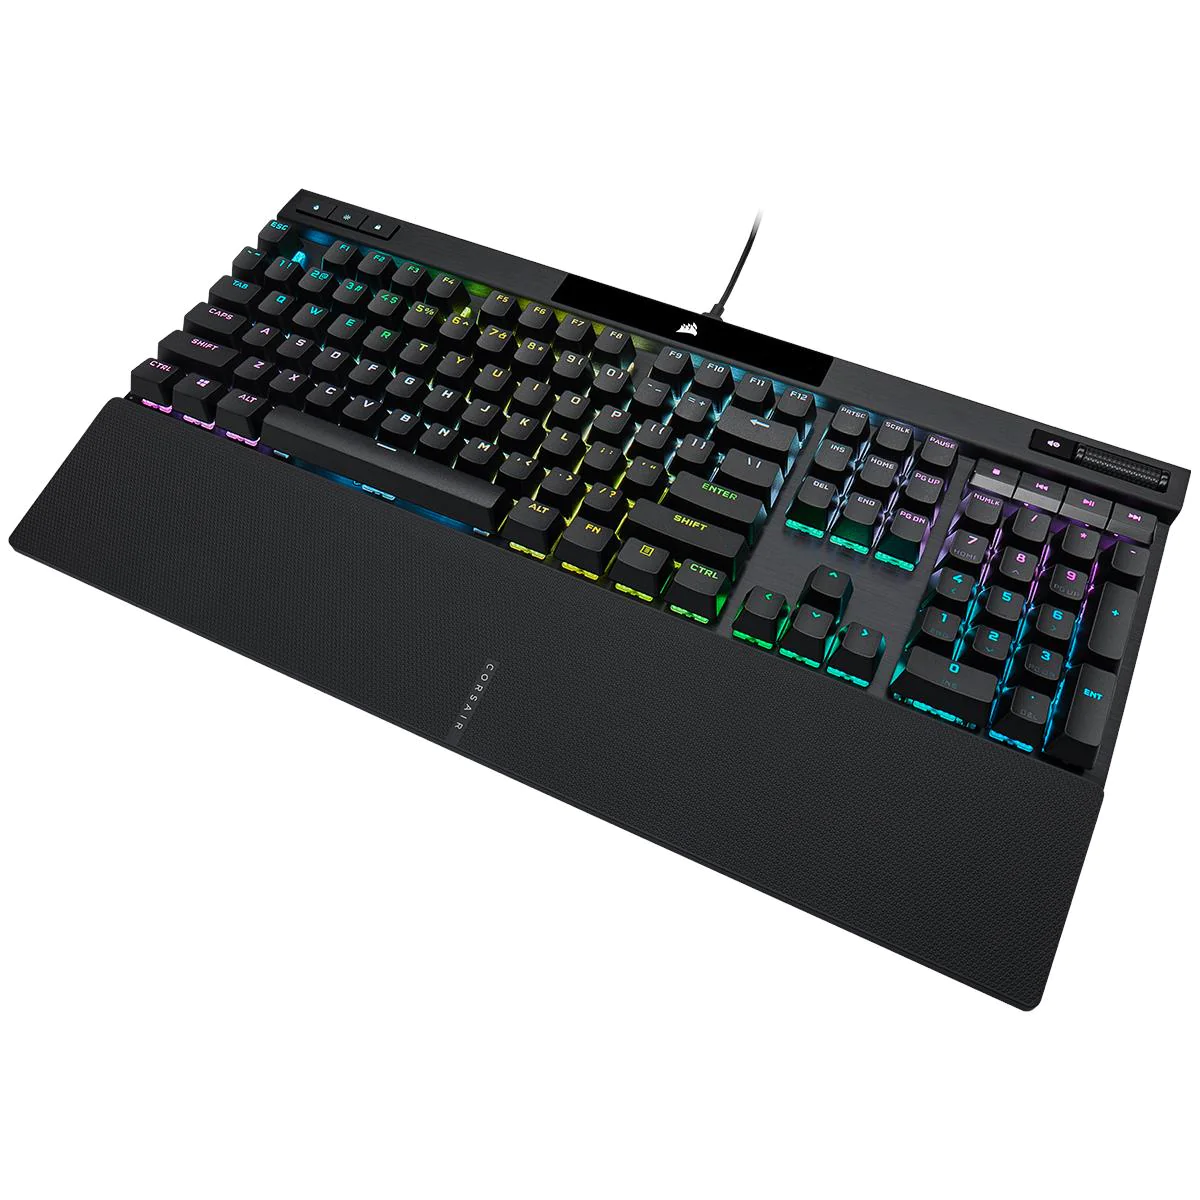 A photo of the Corsair K70 Max RGB Gaming Keyboard